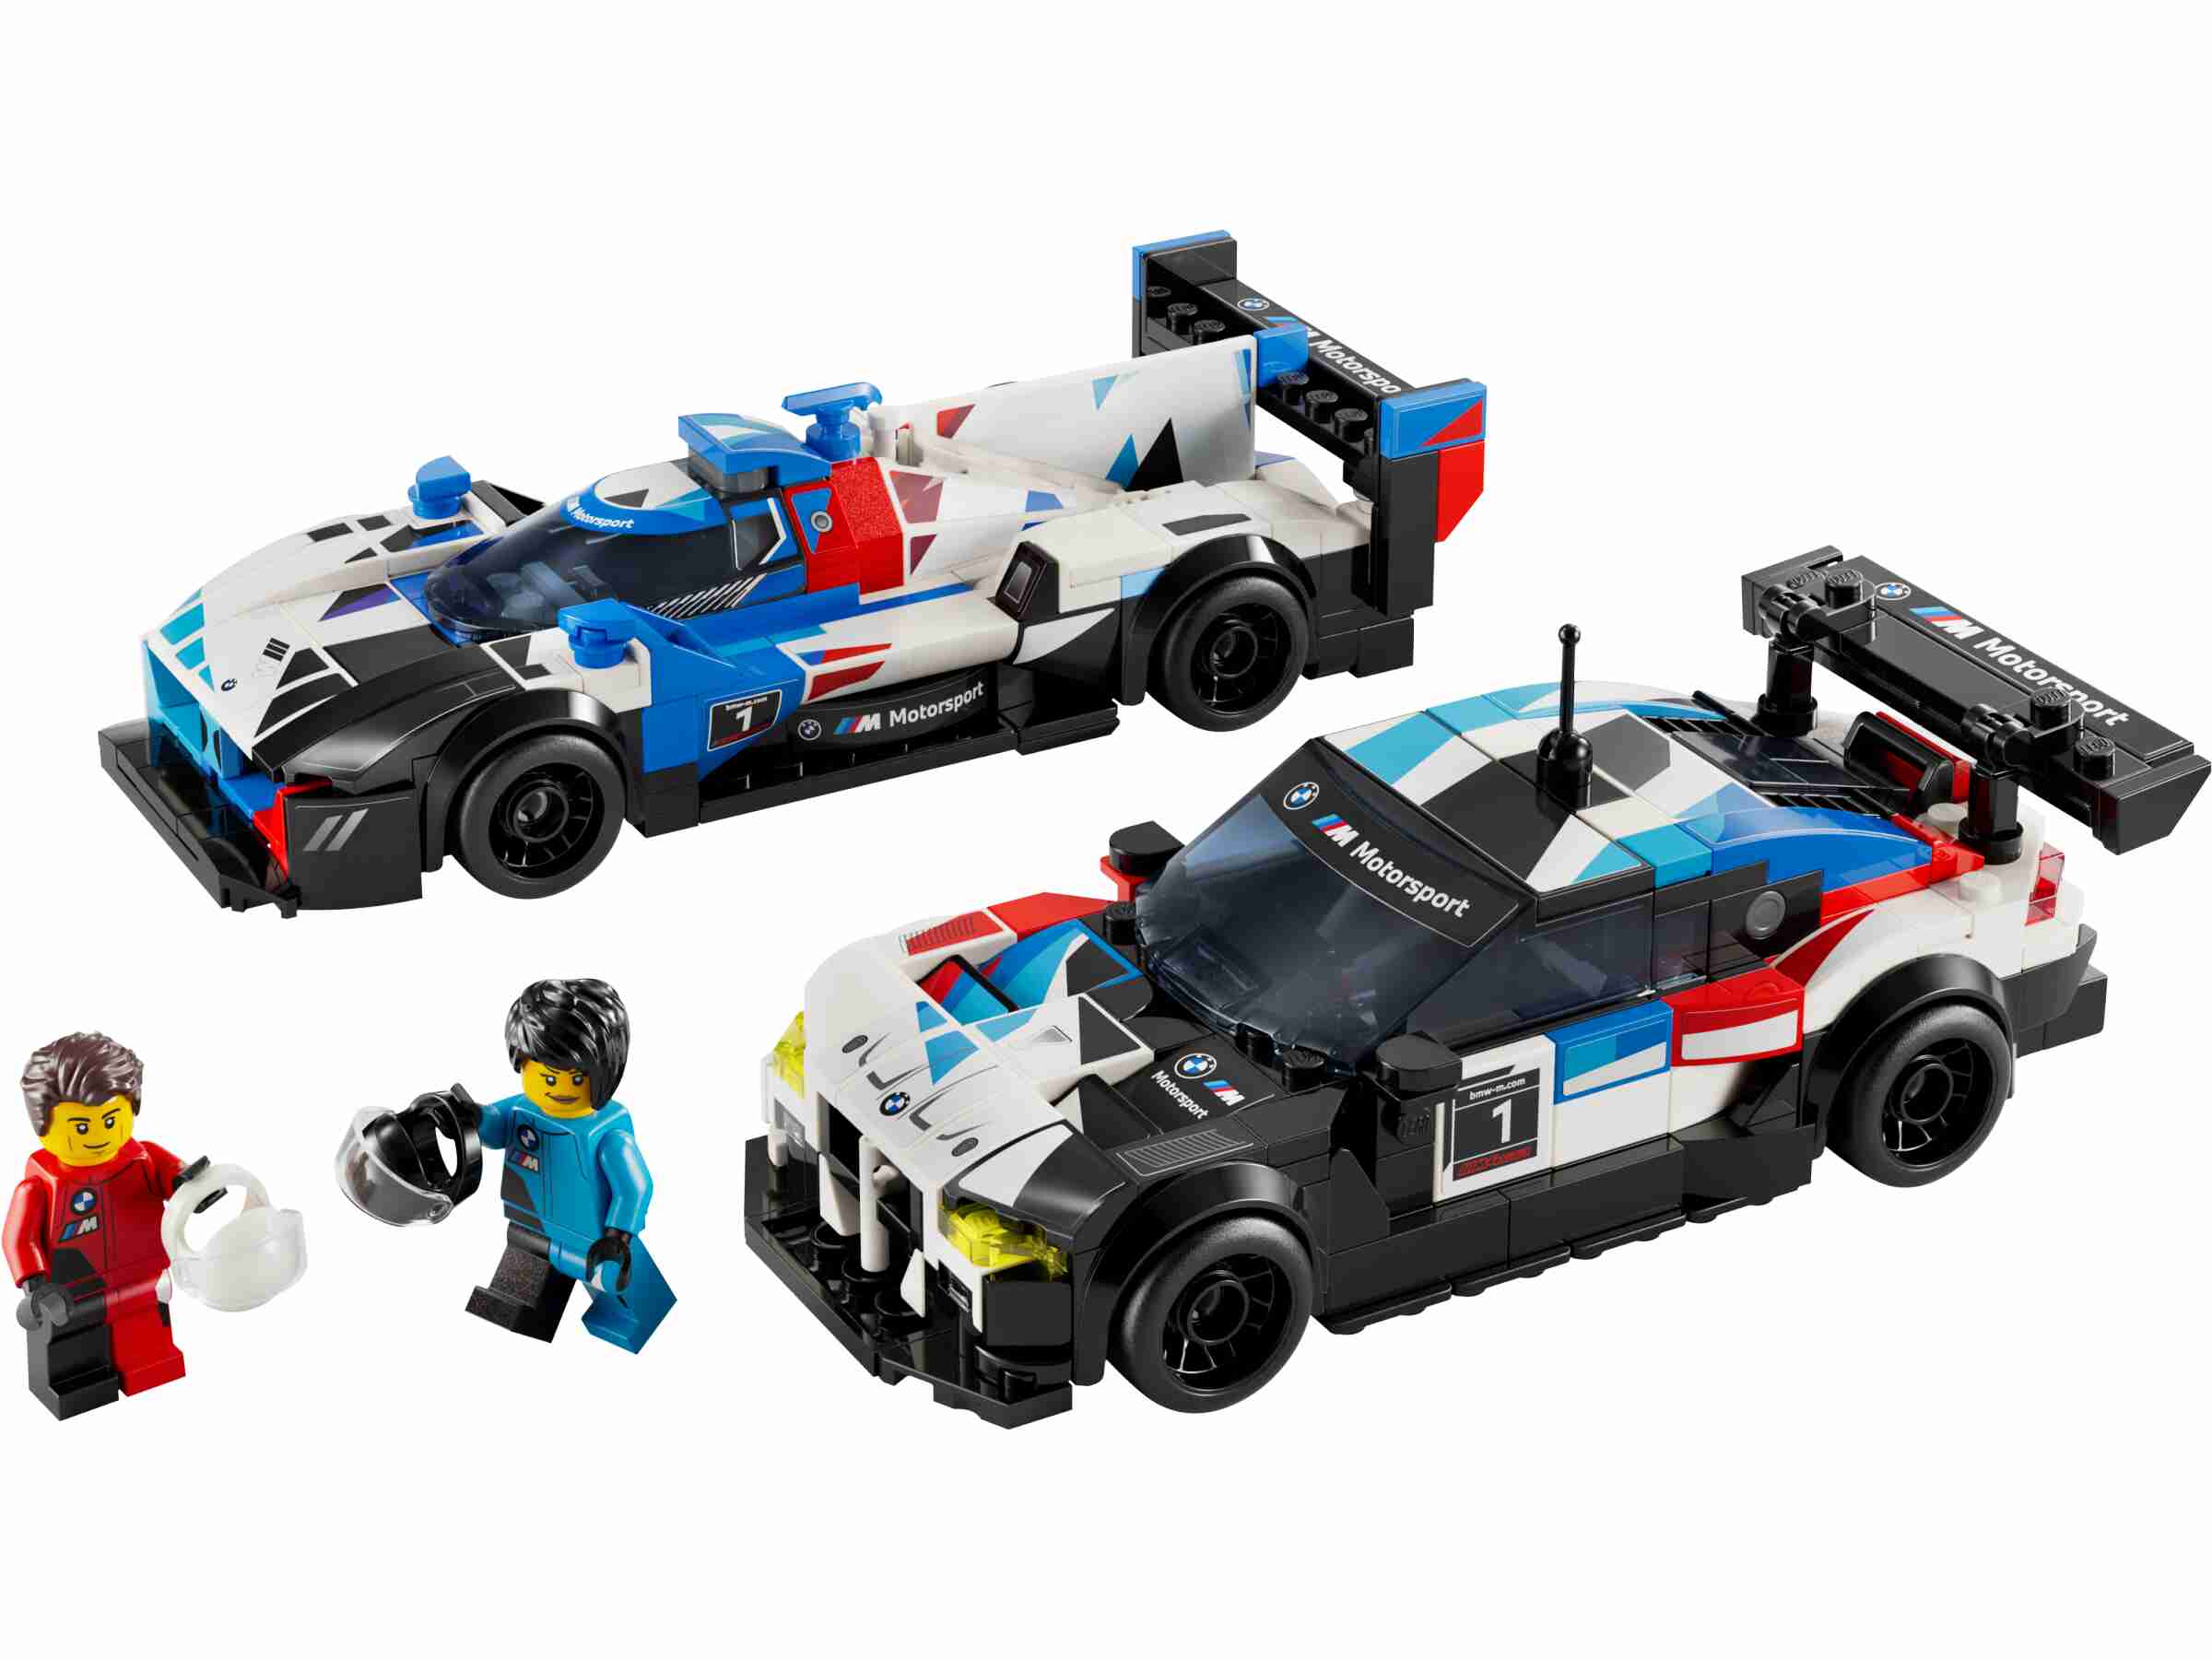 LEGO 76922 Speed Champions BMW M4 GT3 & BMW M Hybrid V8 Rennwagen, 2 Minifiguren